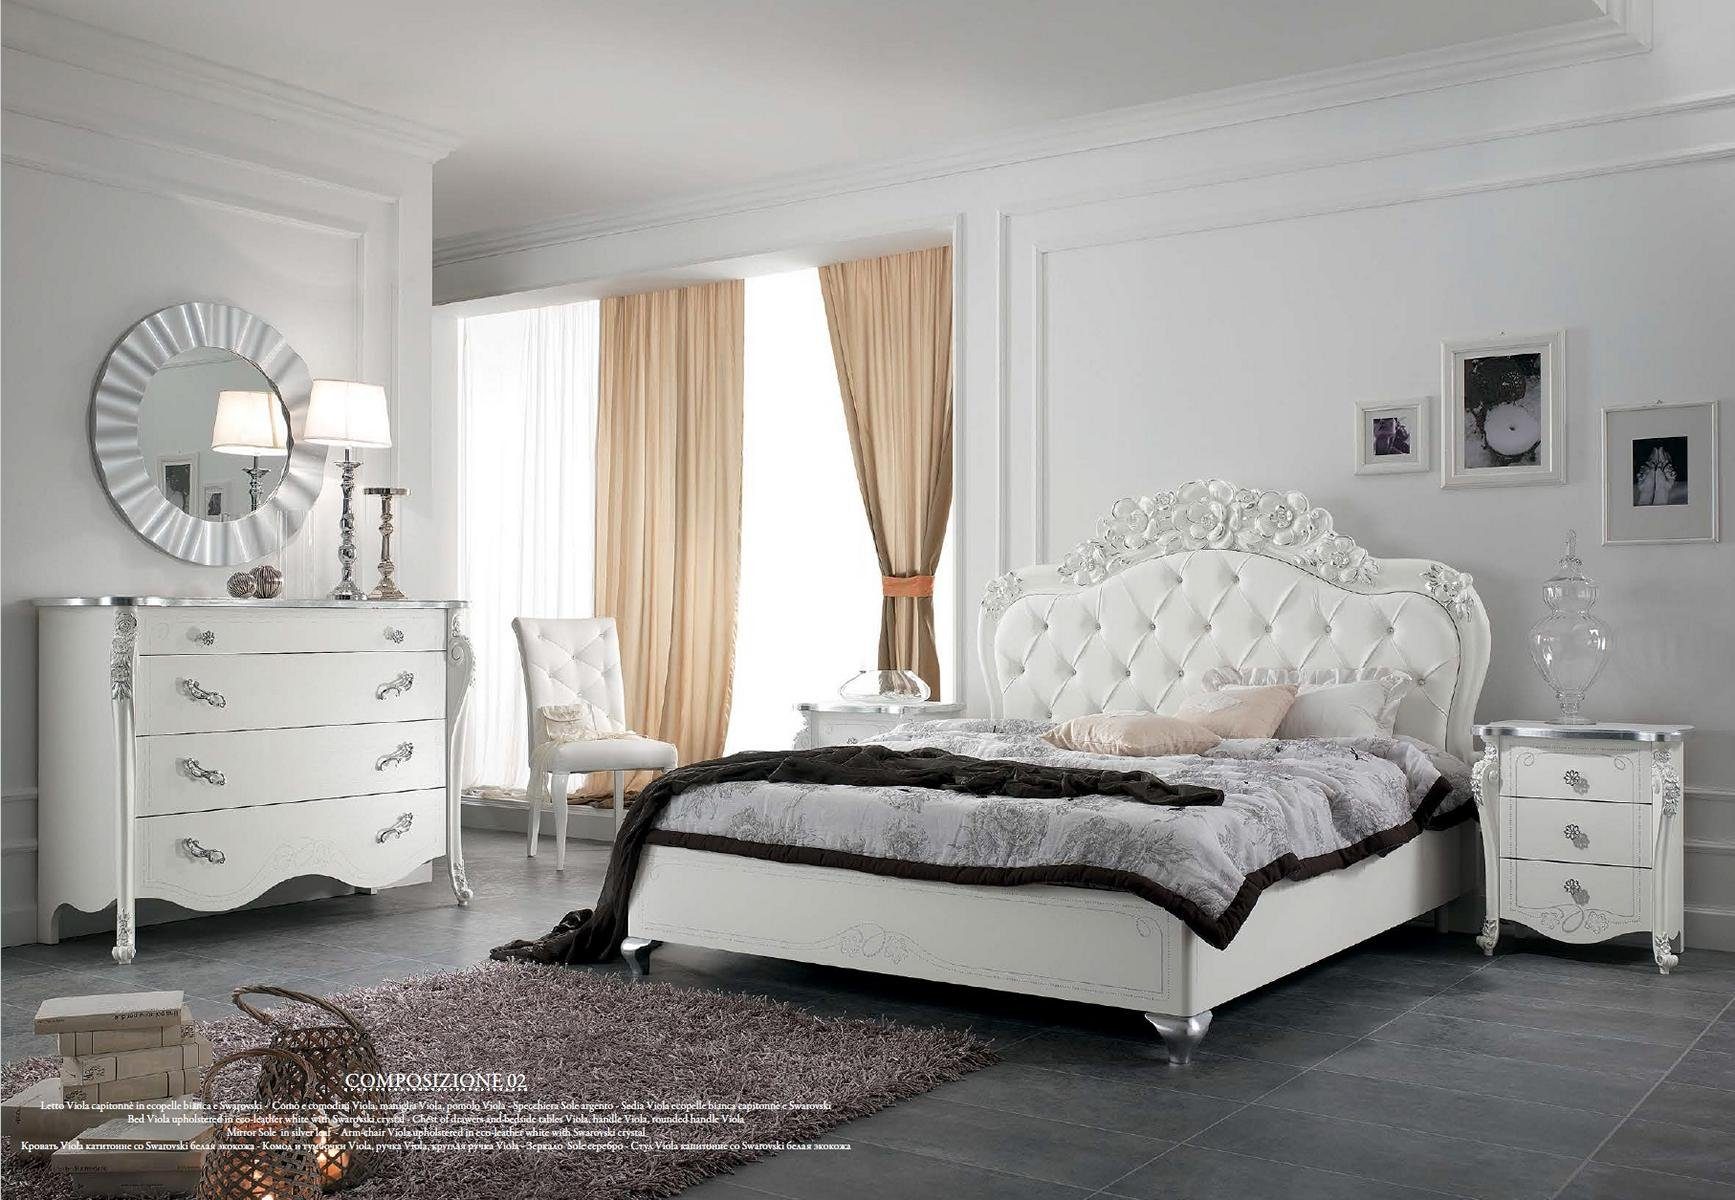 Holz déco (Bett) Italienische Design Möbel JVmoebel Art Klassische Bett Betten Stil Bett